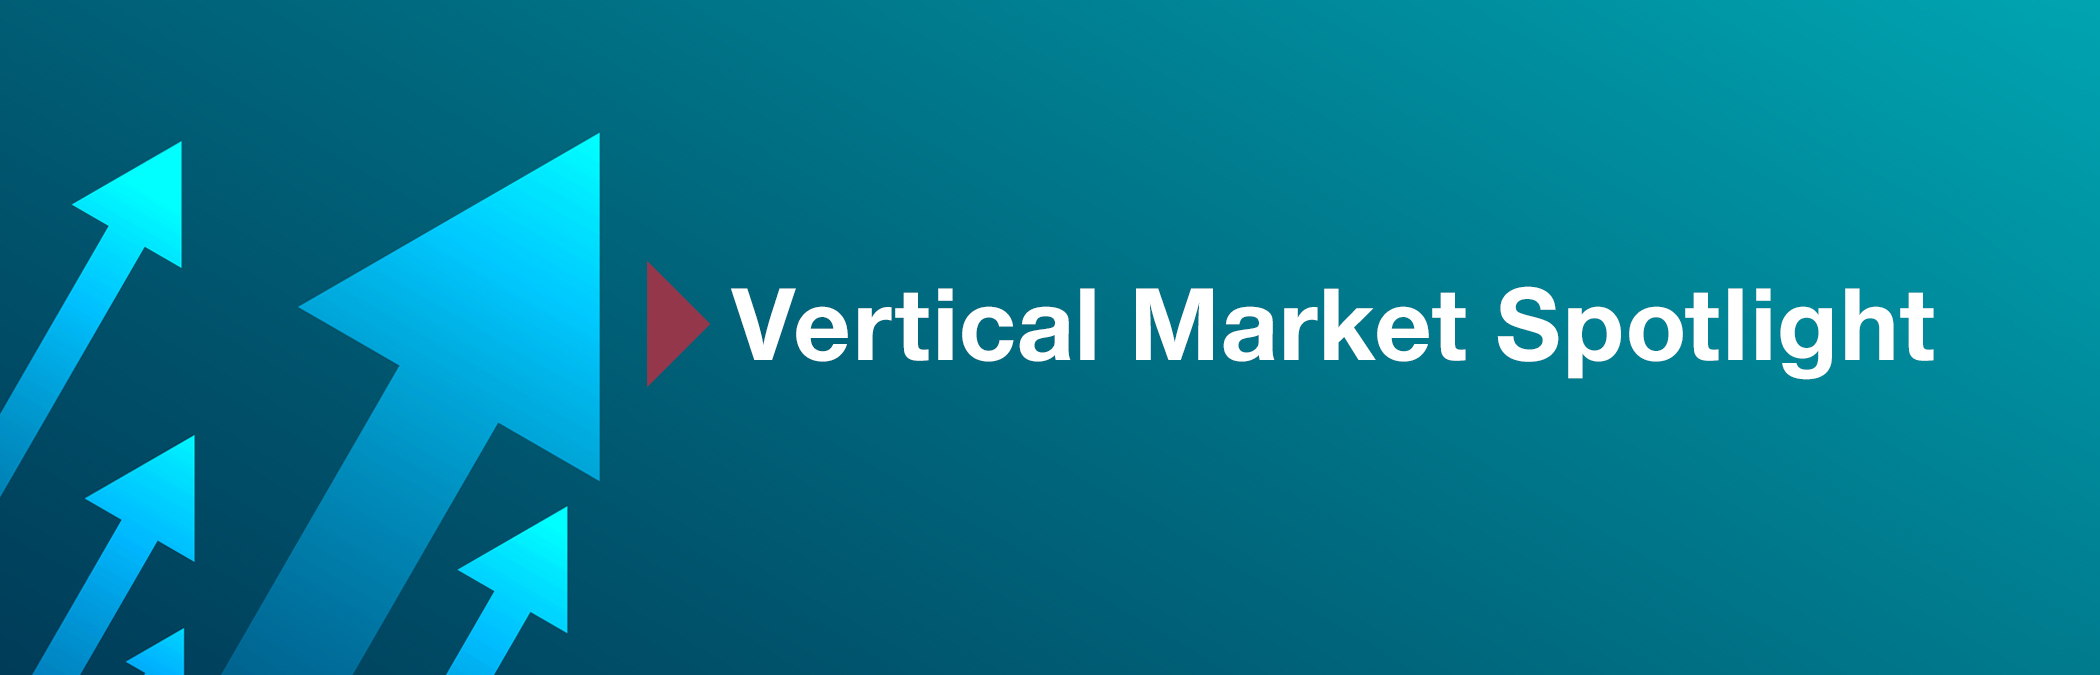 Vertical Market Spotlight